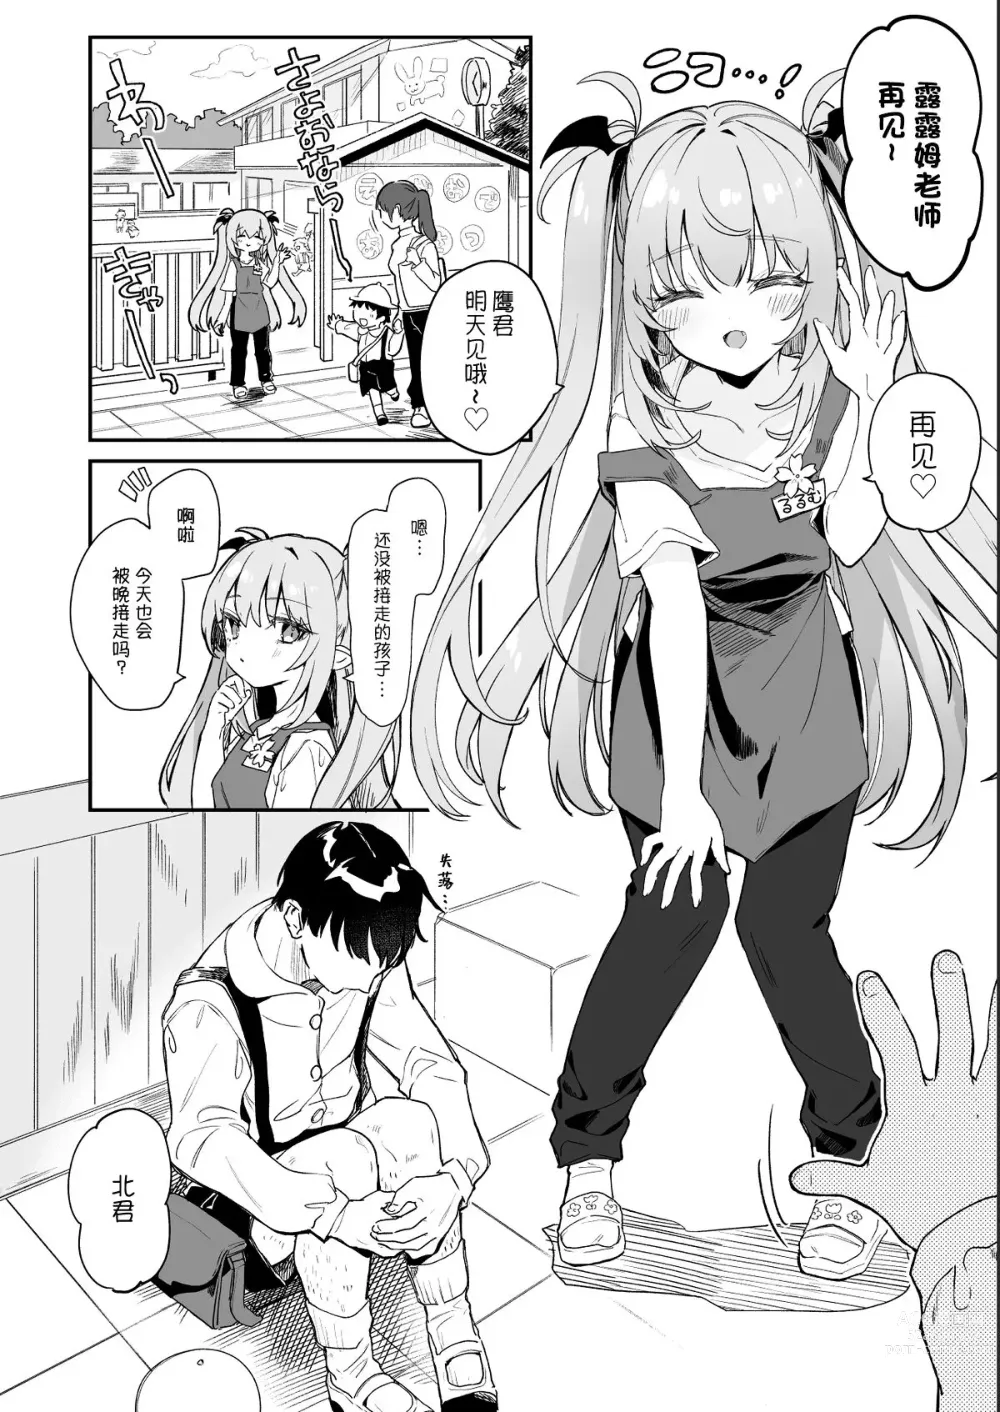 Page 2 of doujinshi Kodomo no Hi (Imishin) ni Mukete Manga o Kaku